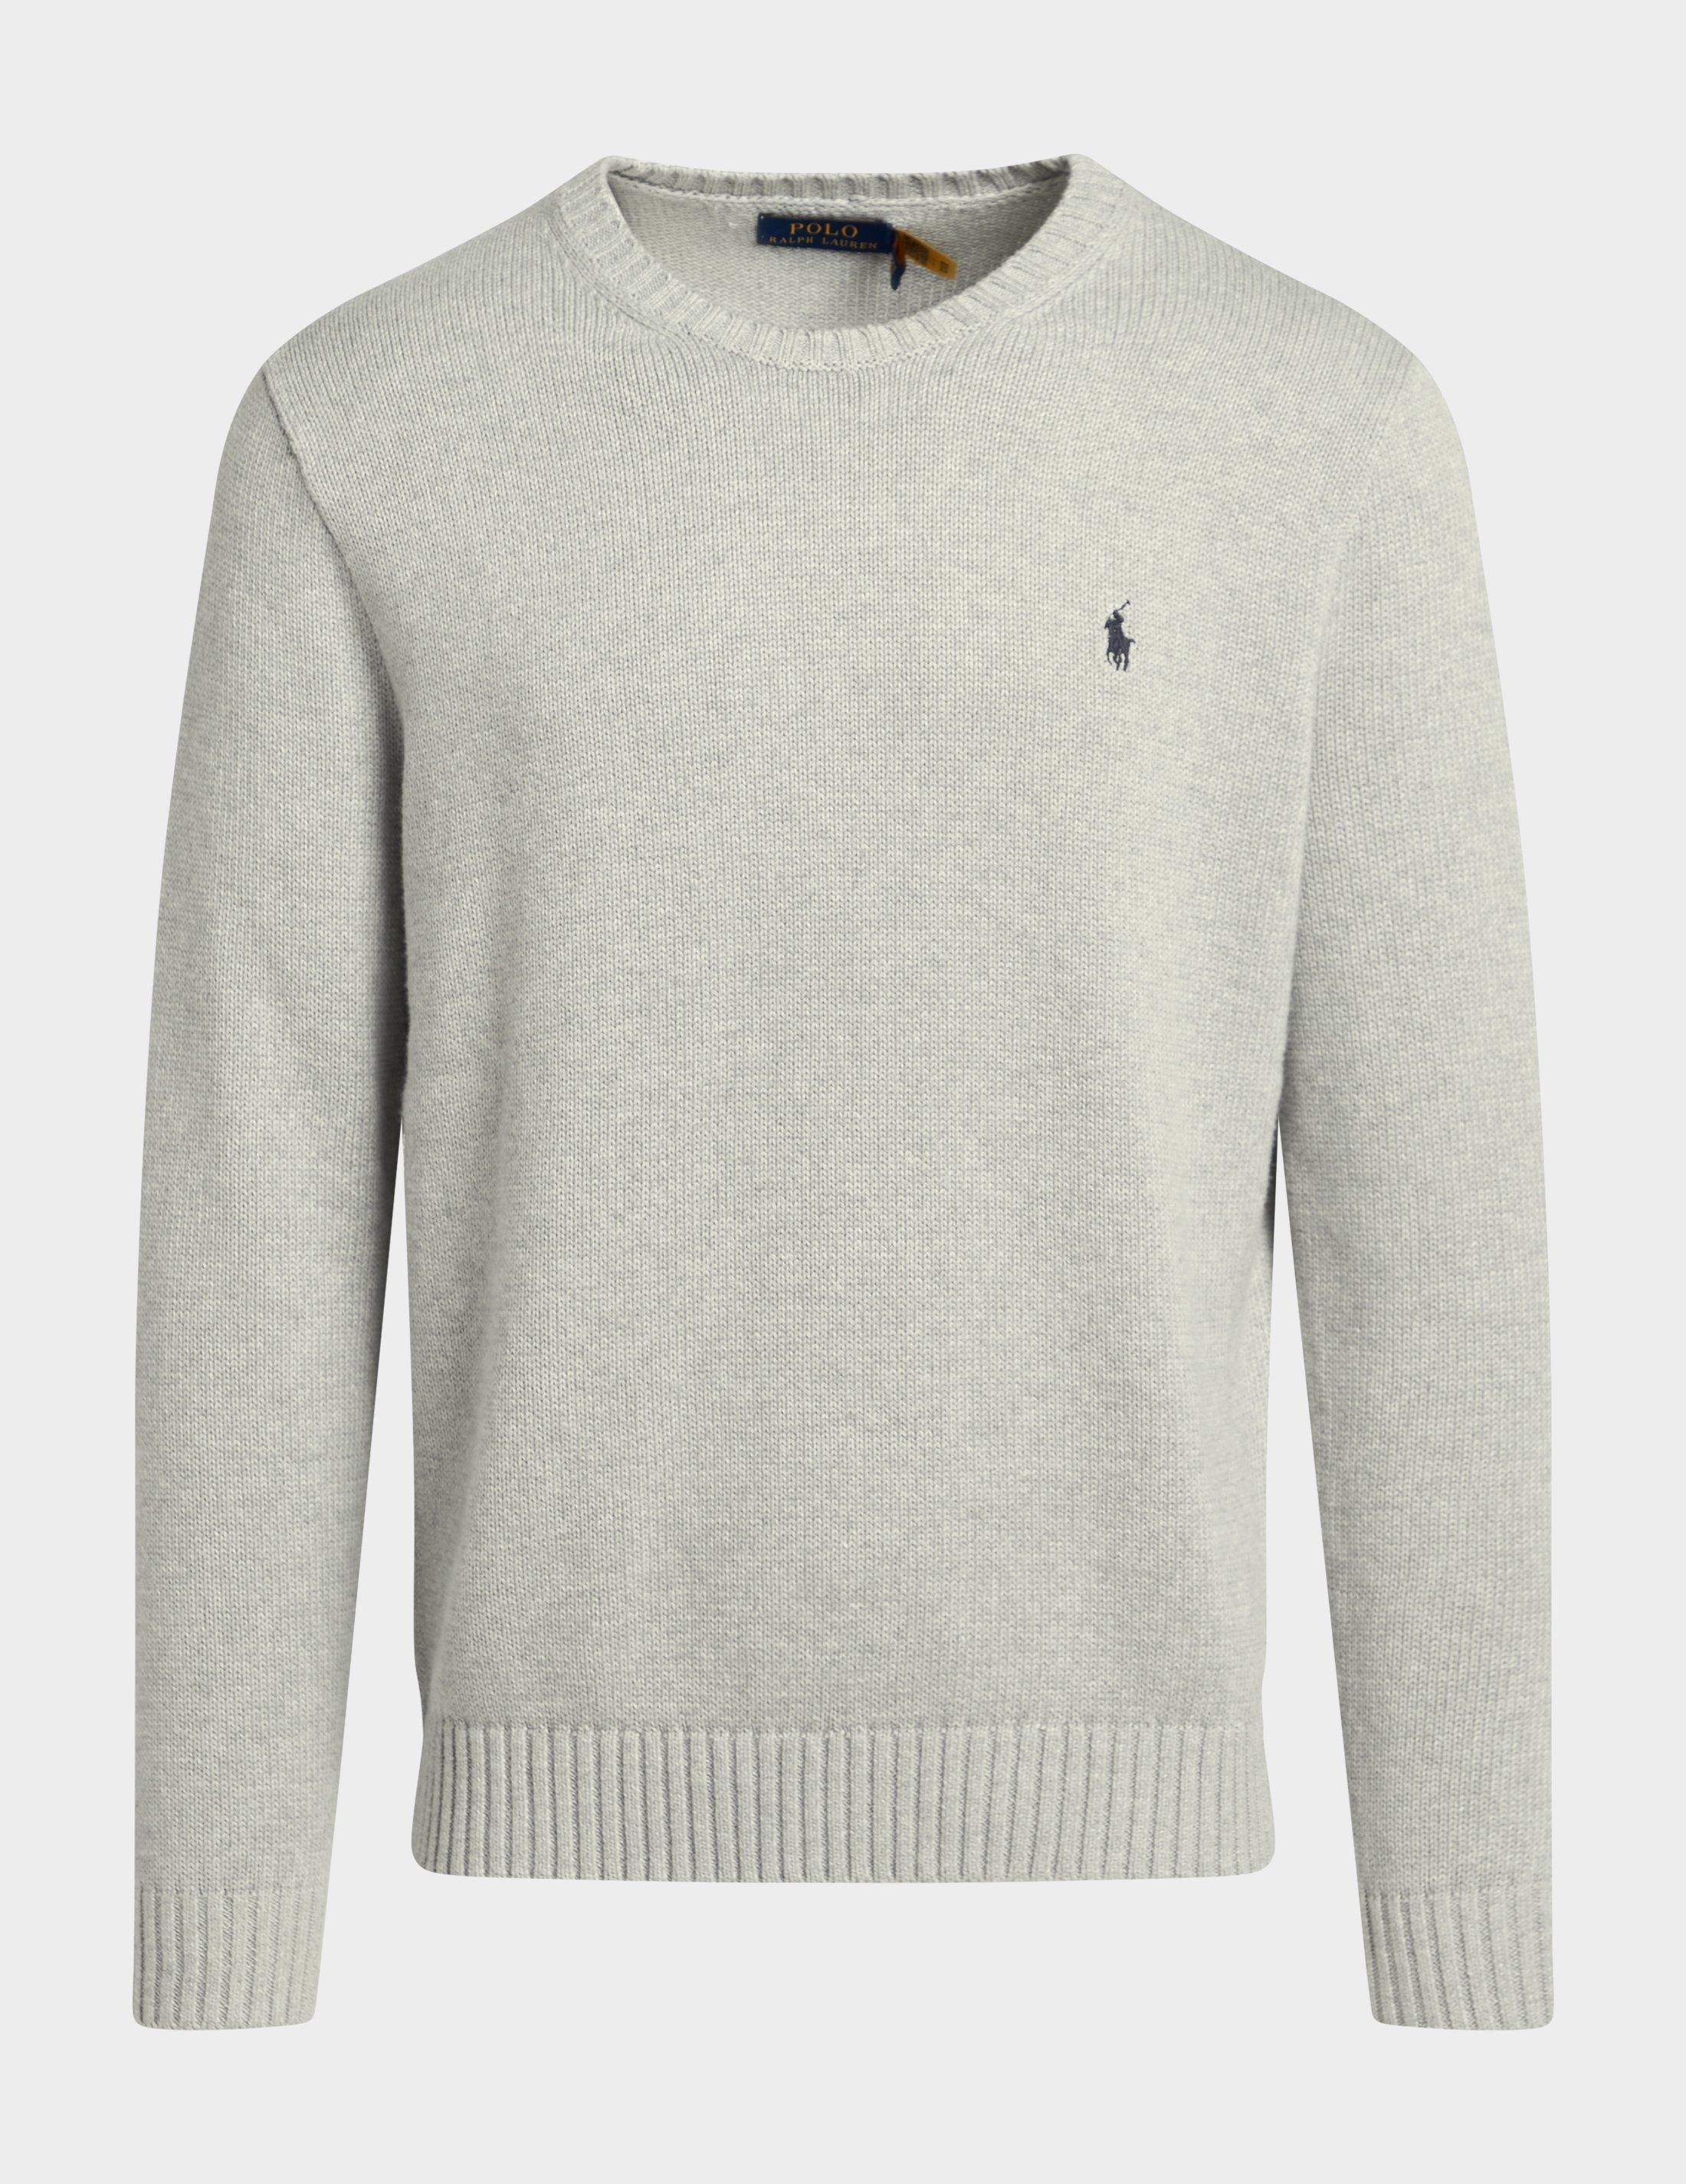 ralph lauren grey sweatshirt